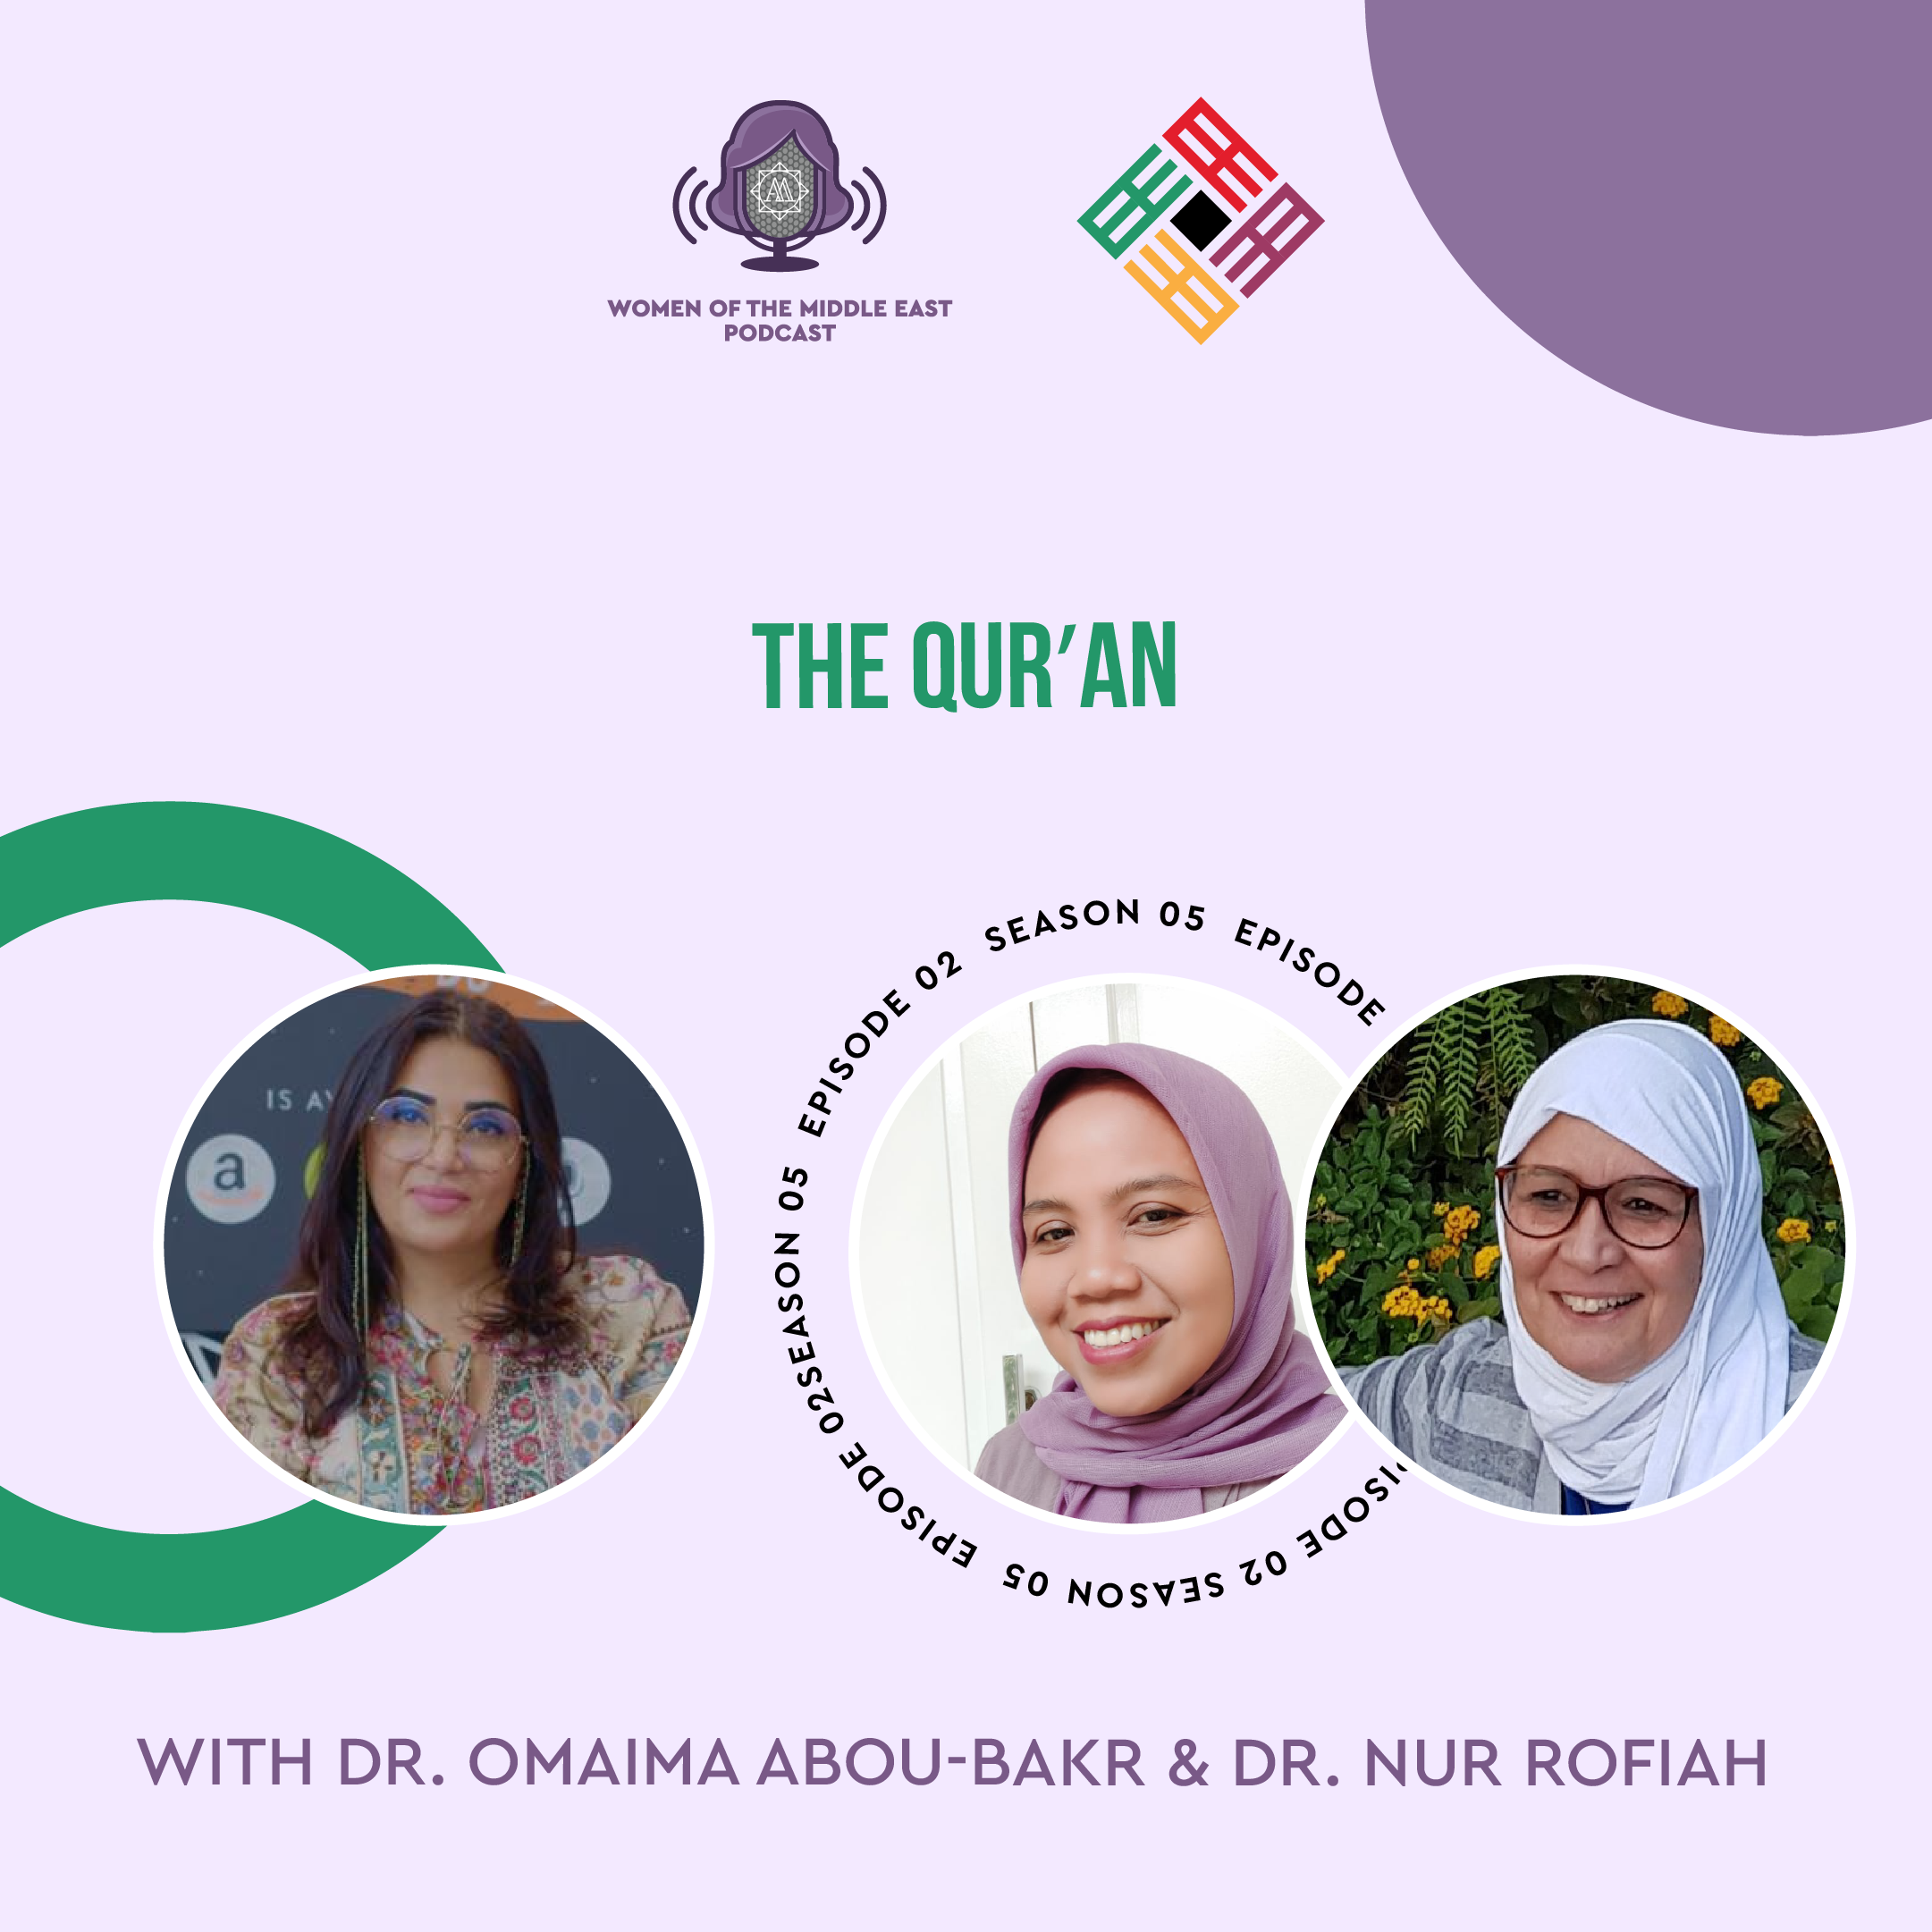 S5 E2: The Qurʾan featuring Dr. Omaima Abou-Bakr & Dr. Nur Rofiah